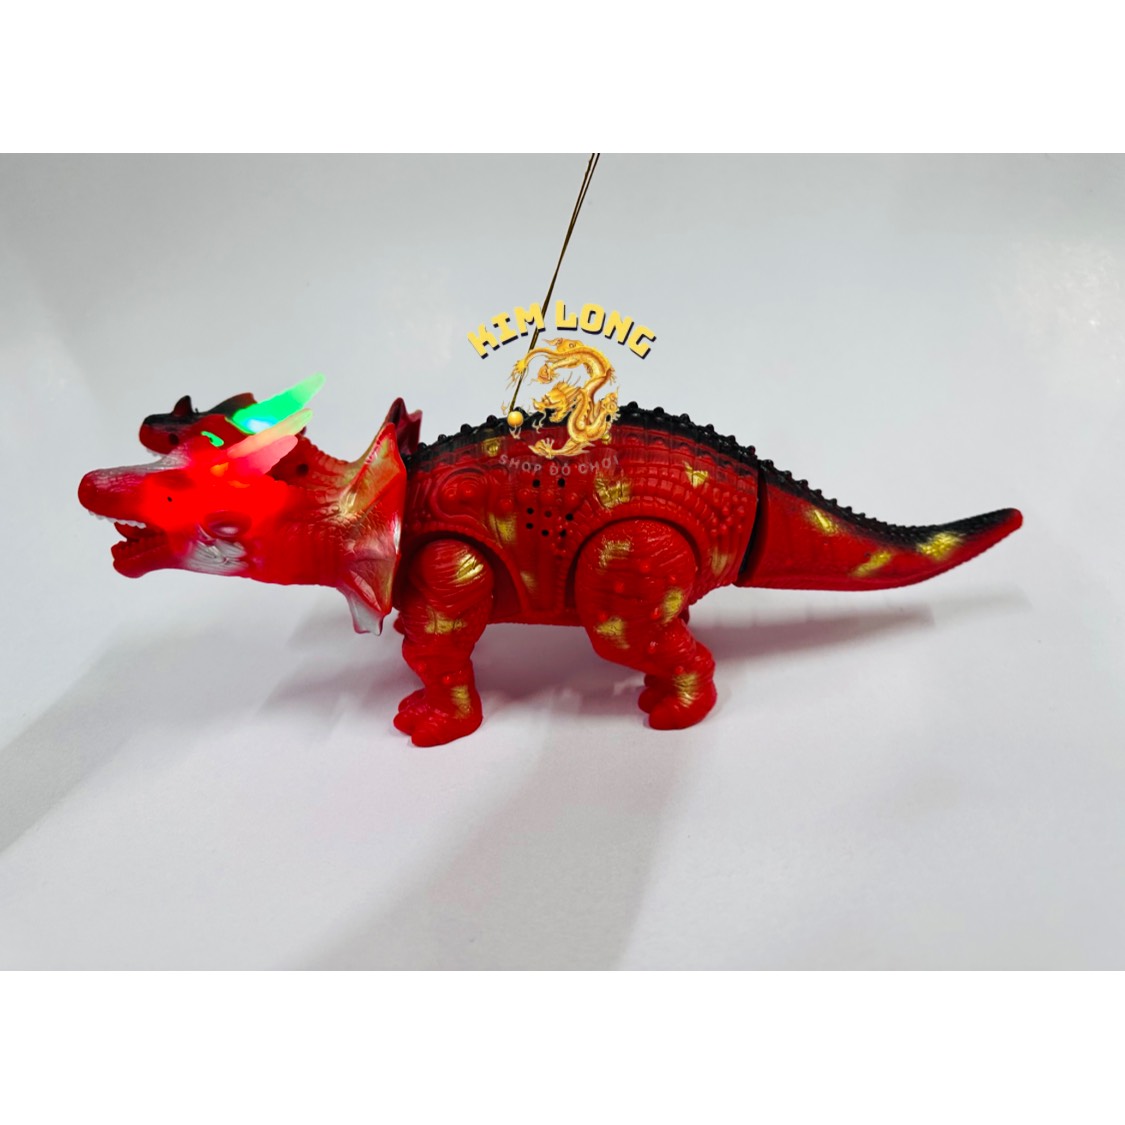 Đồ chơi Lồng đèn trung thu hình khủng long 2 đầu có pin nhạc đèn quà tặng trung thu